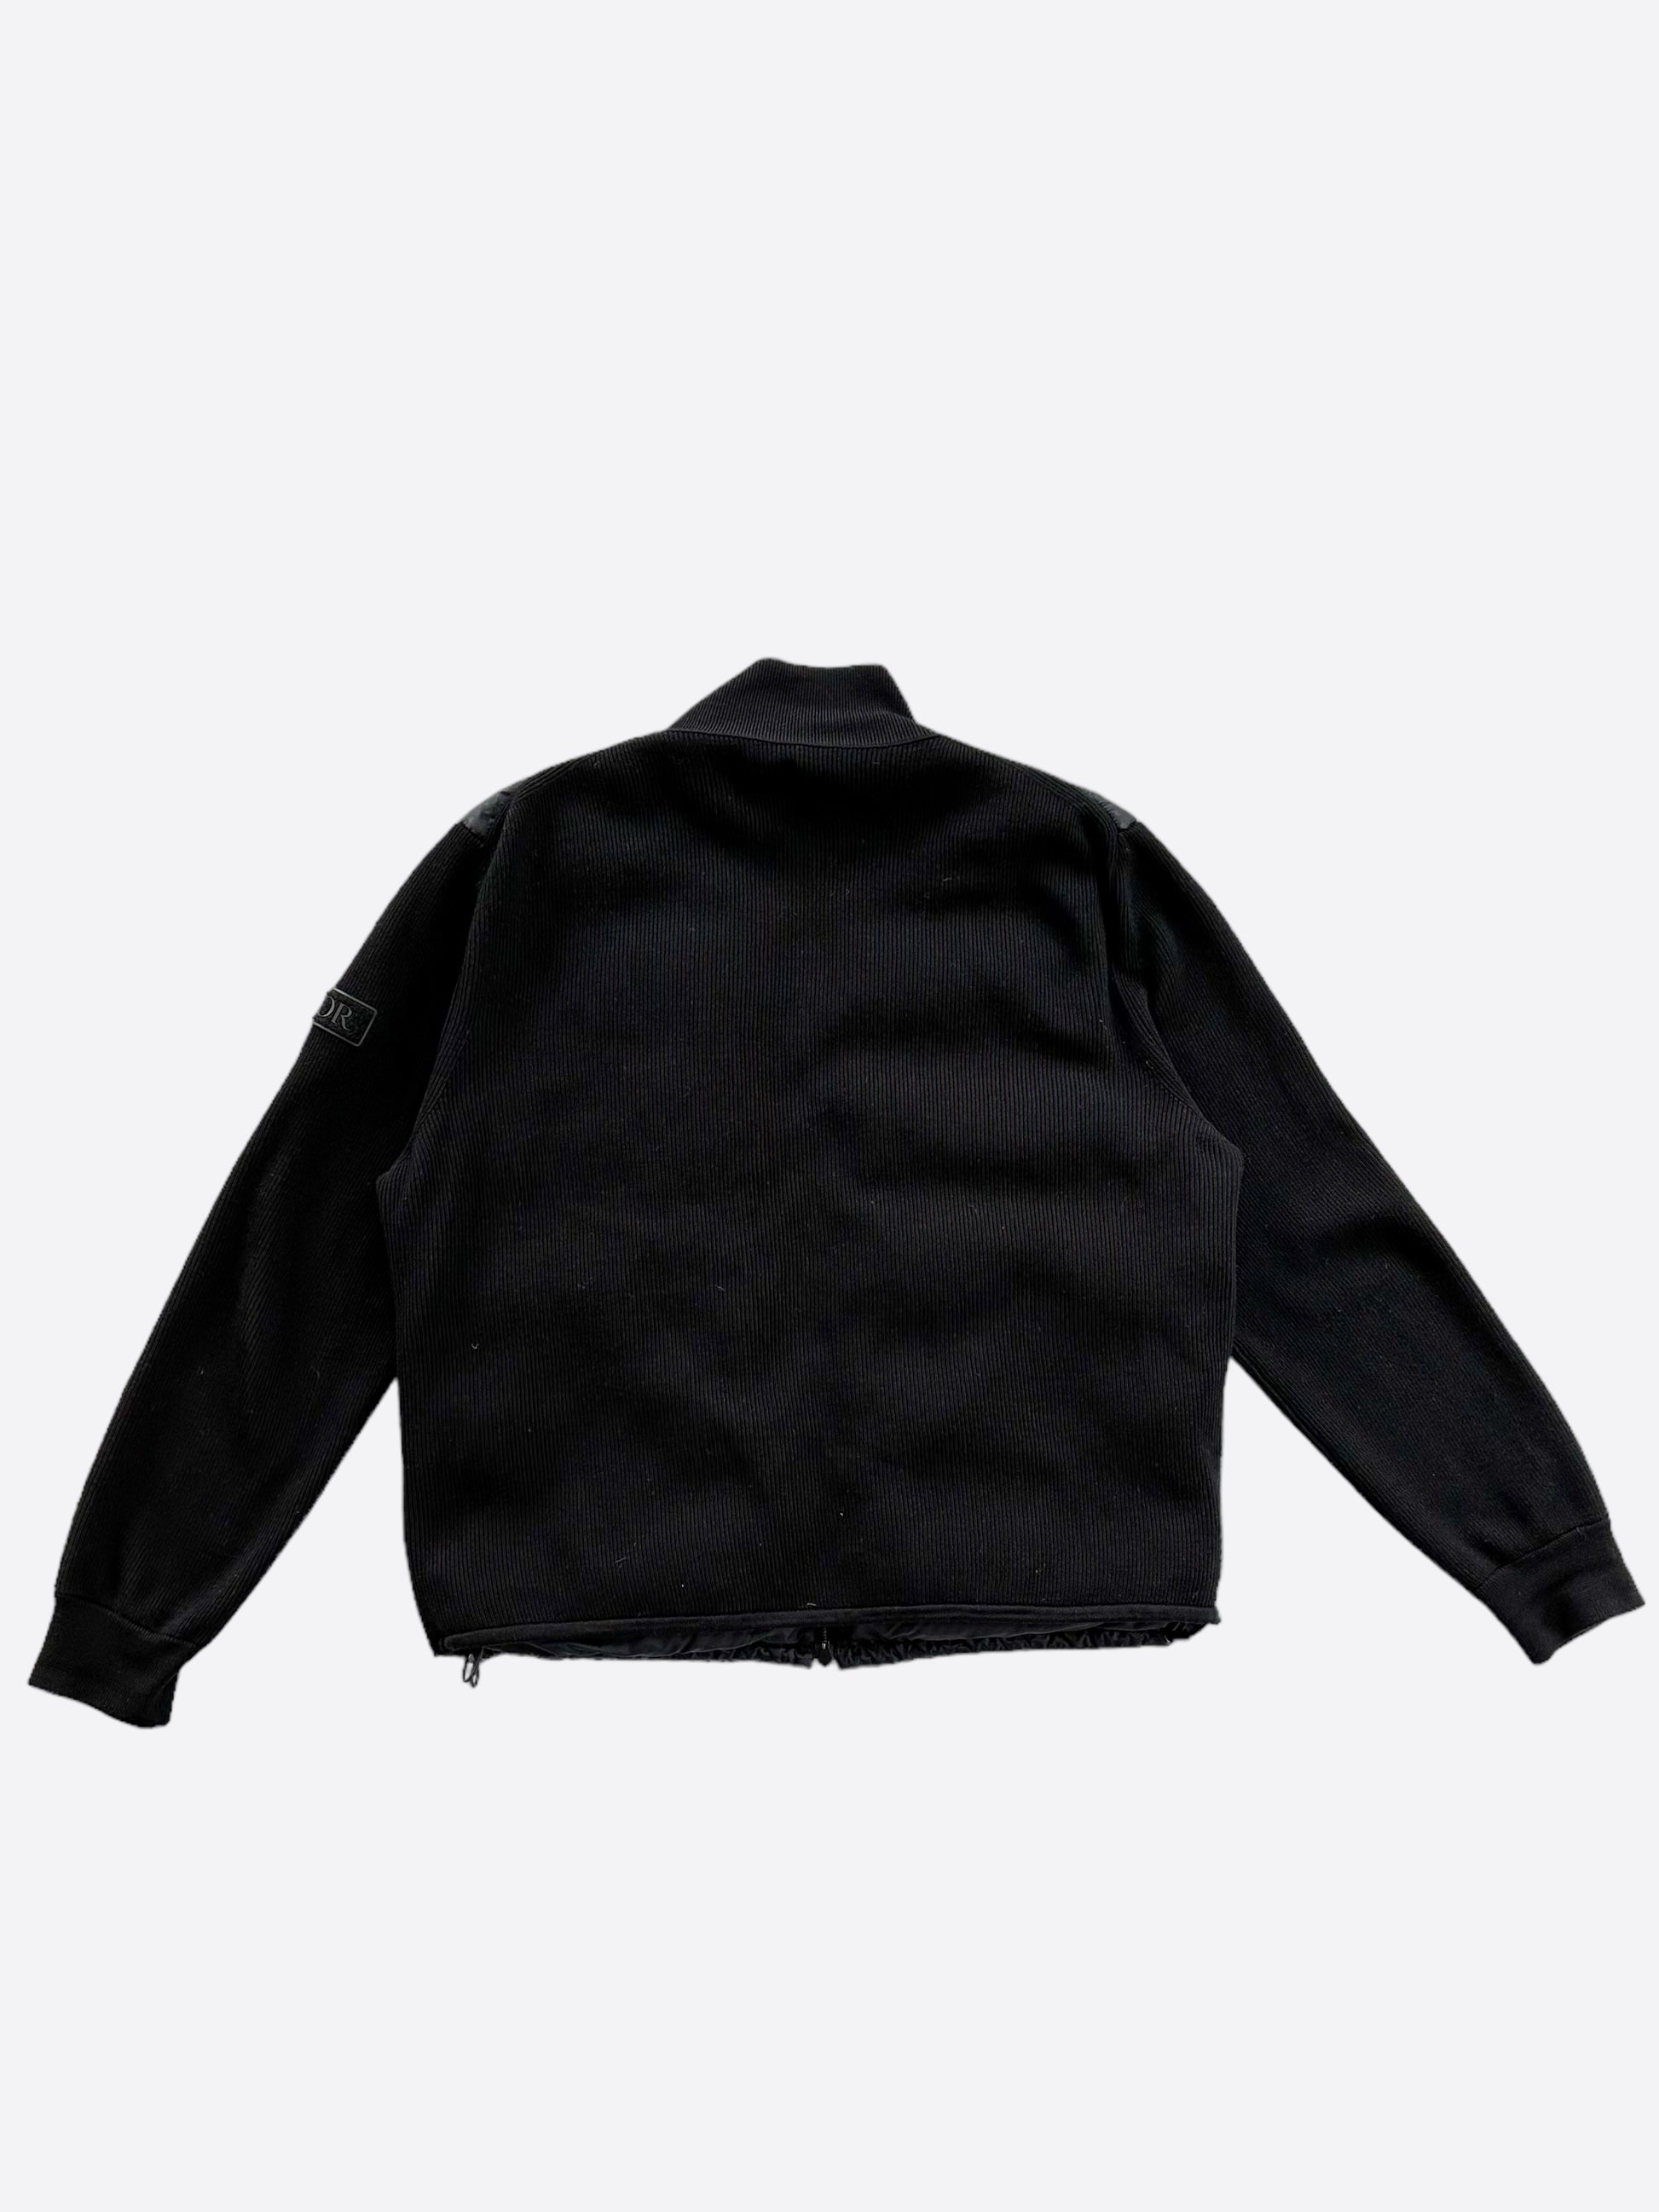 Dior Oblique Jacket Black Wool Knit